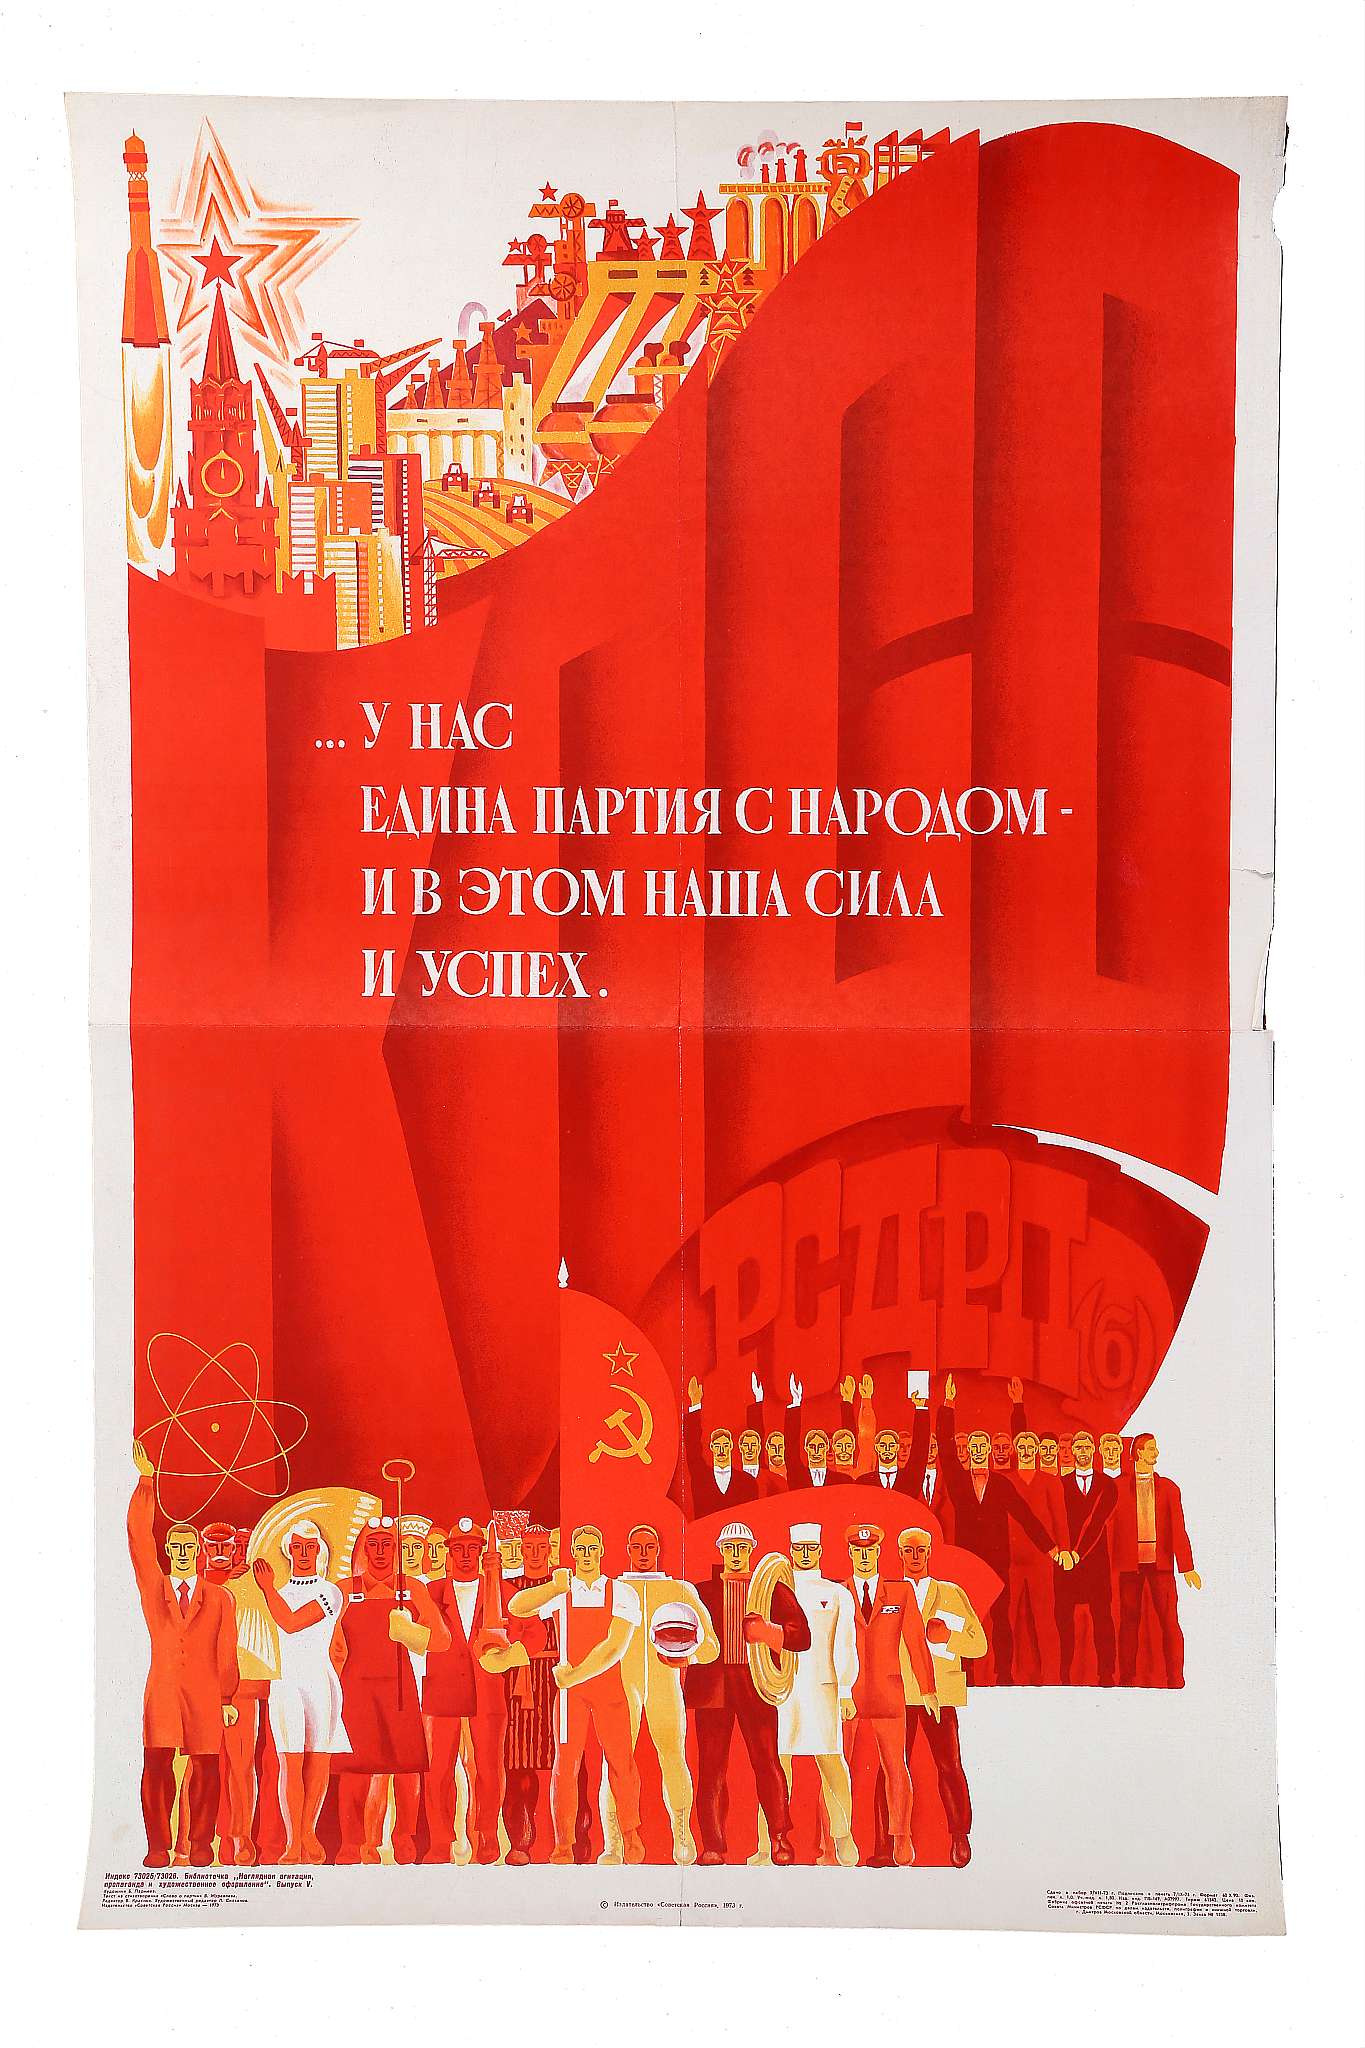 A VINTAGE SOVIET PROPAGANDA POSTER, Bolsheviks RSDRP(b), Artist; B. Parmeyev, printed by